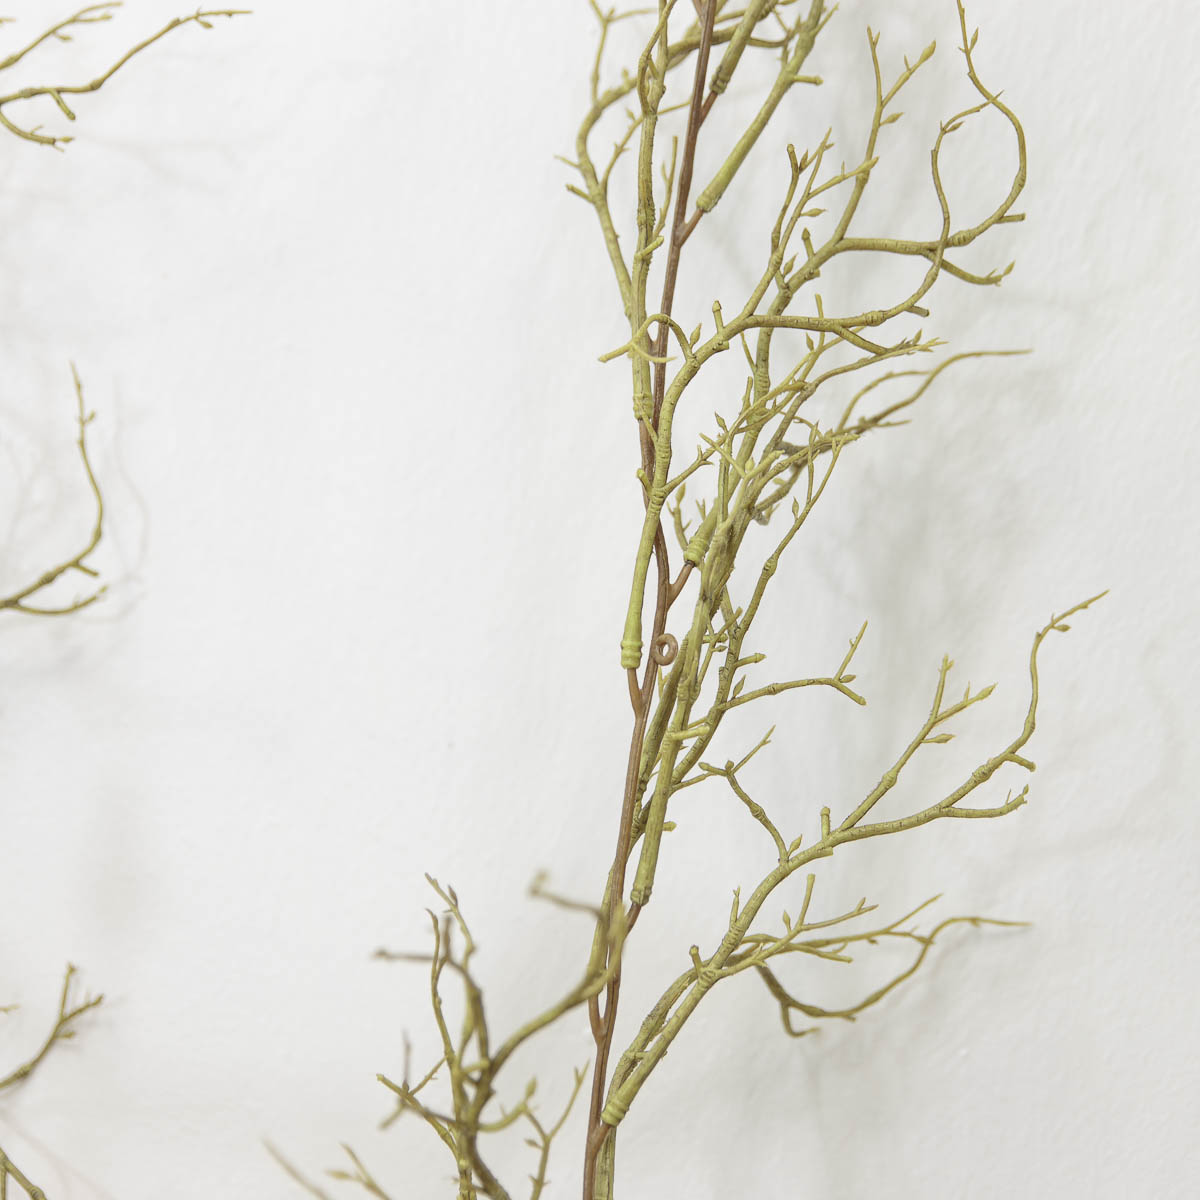 기근 트위그가지 행잉플랜트 조화넝쿨 갈란드 180cm 기근디테일